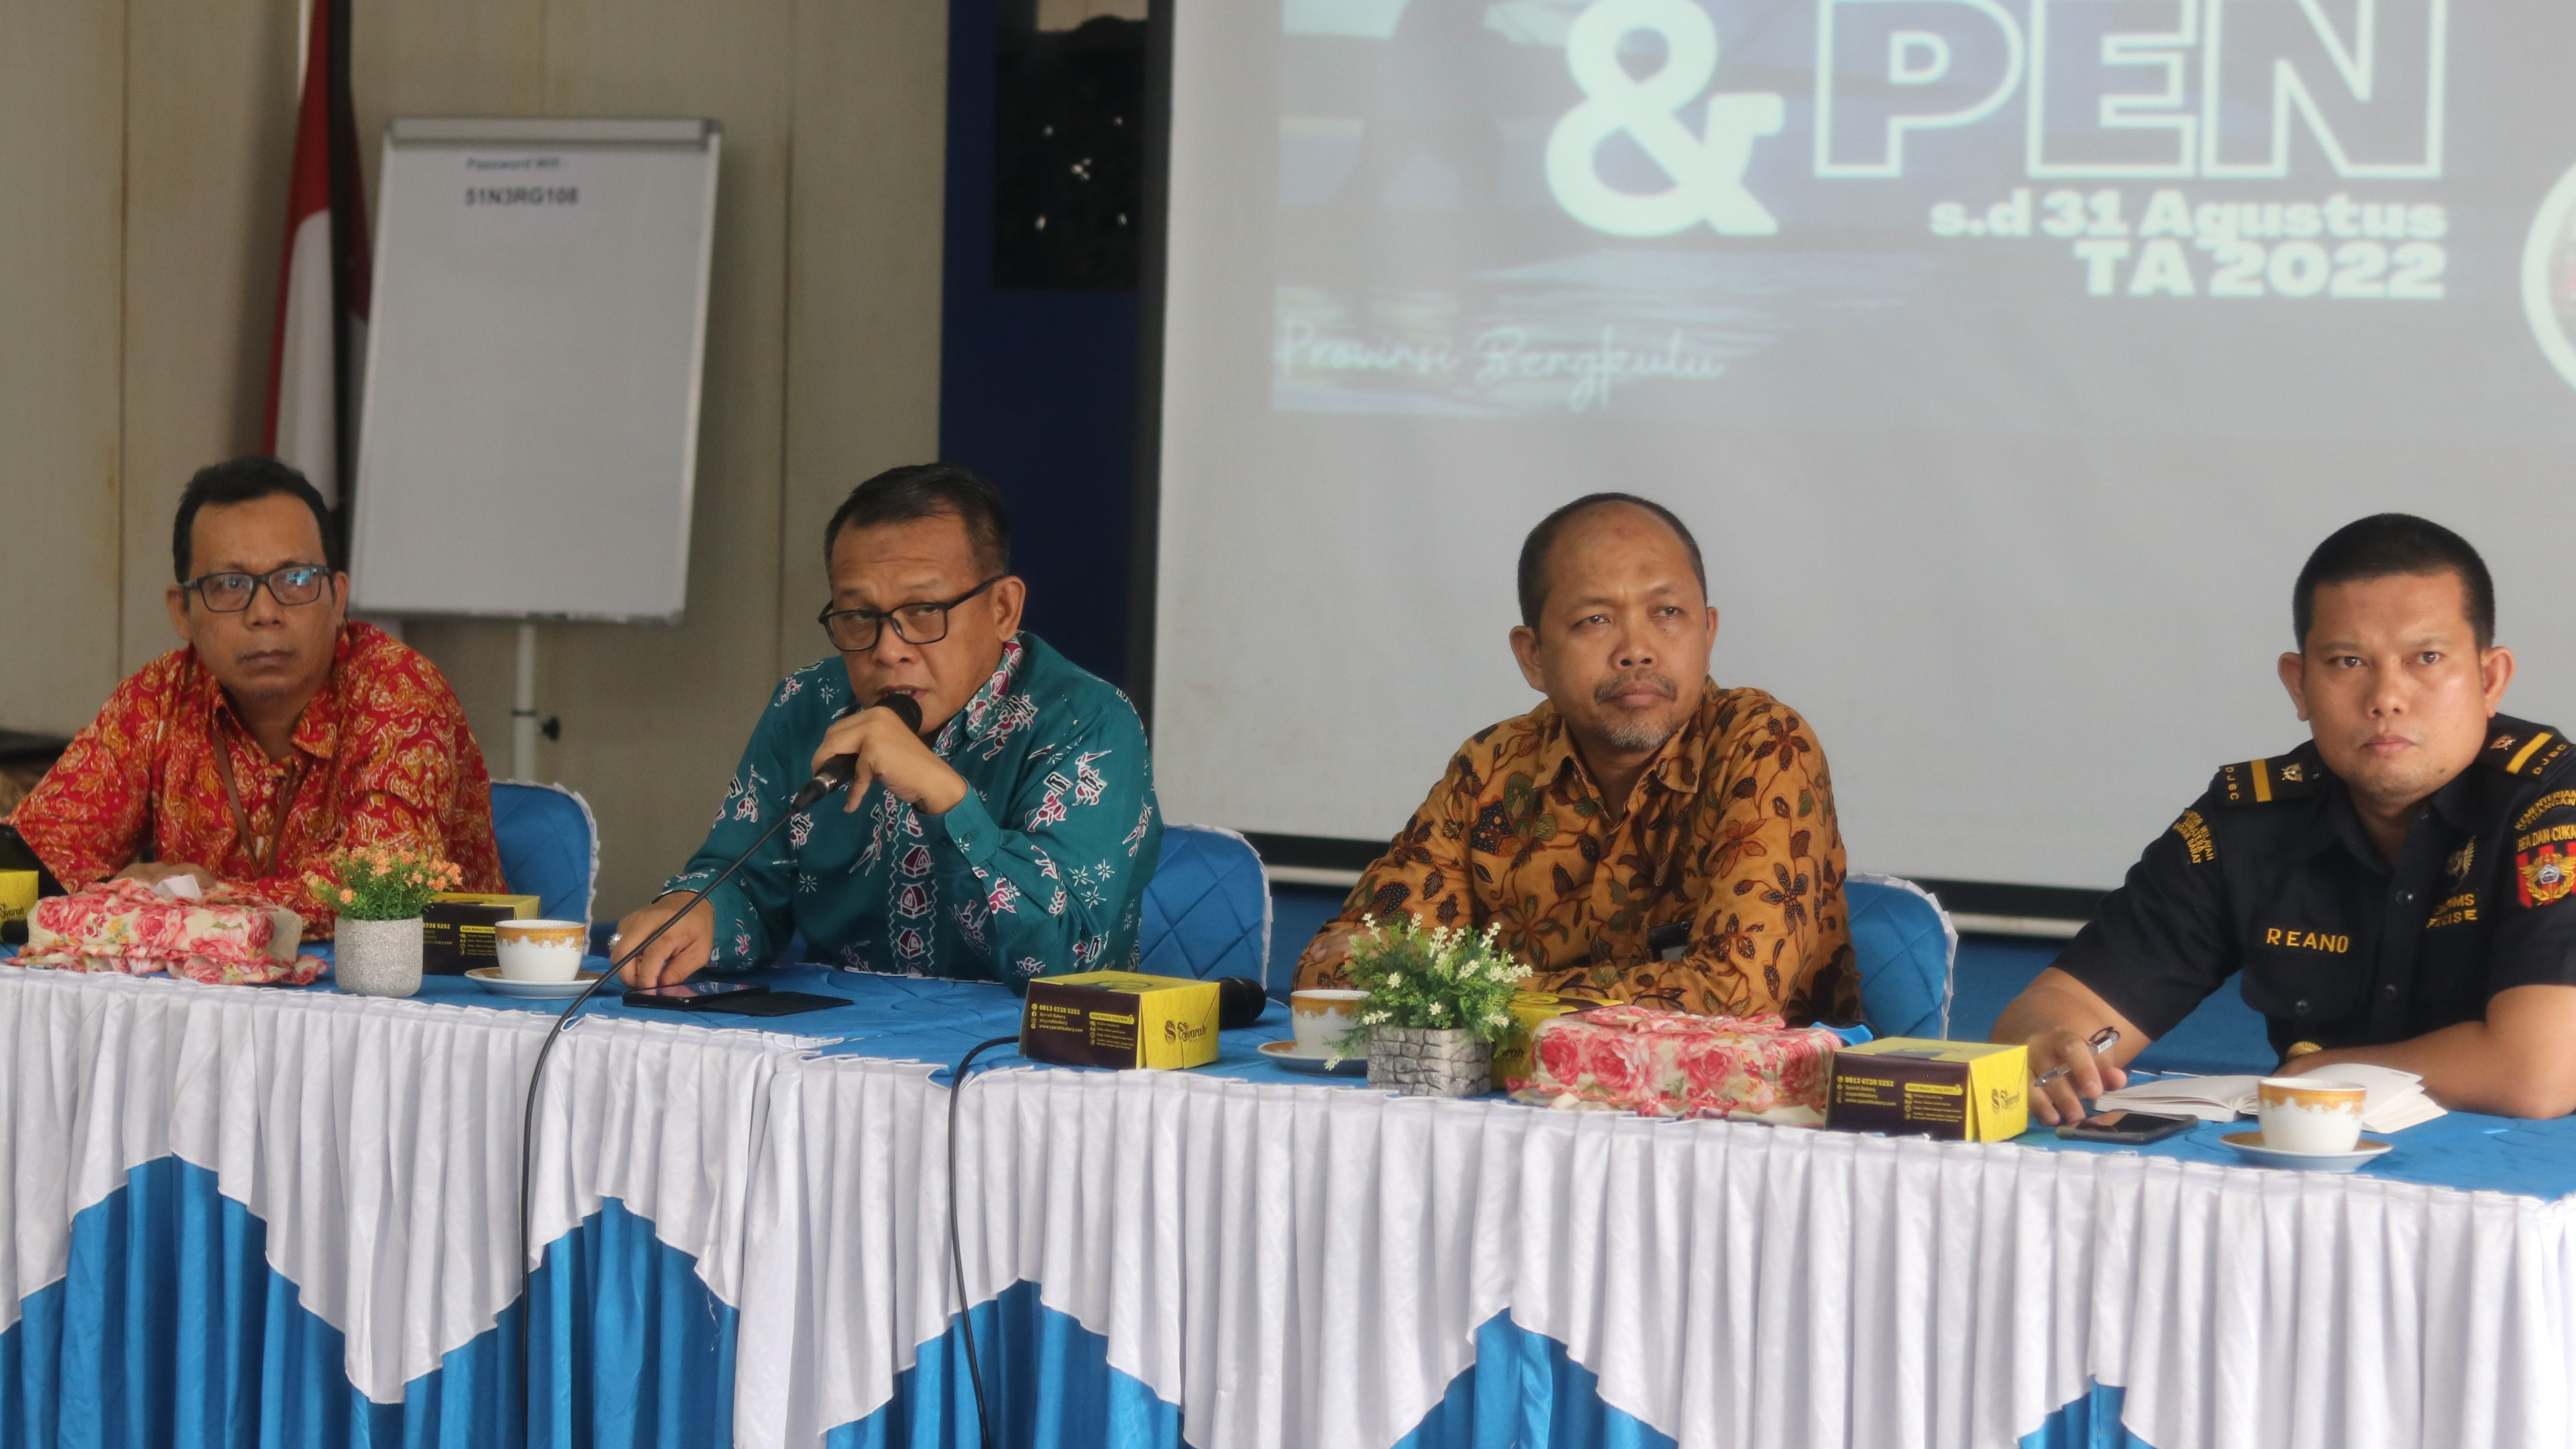 Press Release APBN, KPKNL Bengkulu Ungkap Upaya Penggalian Potensi Lelang UMKM